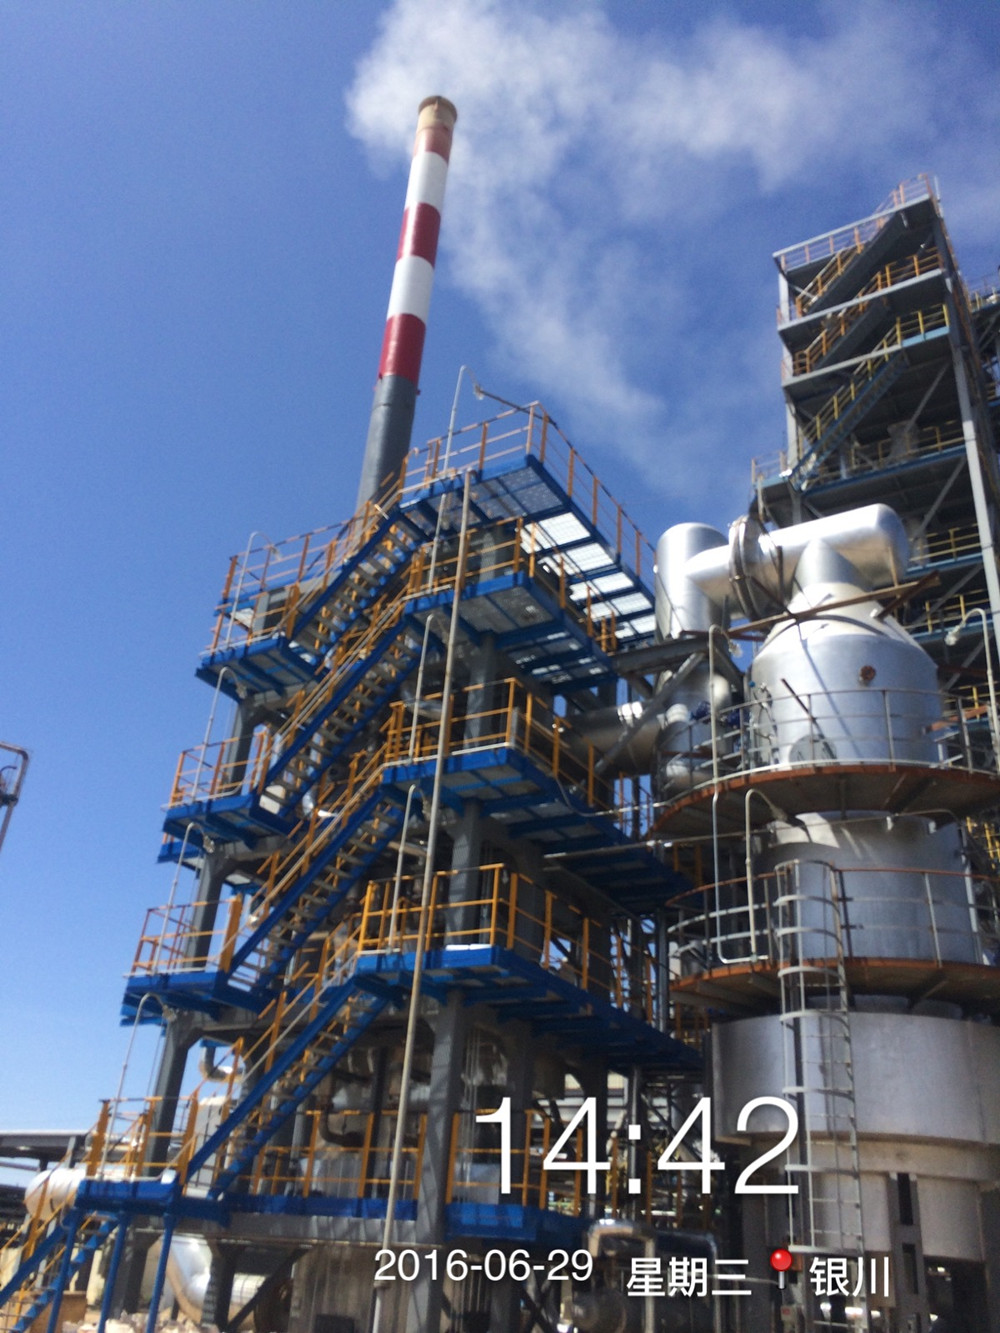 15298G宁夏宝利达化工有限公司30万吨／年污废油技改项目余热锅炉3